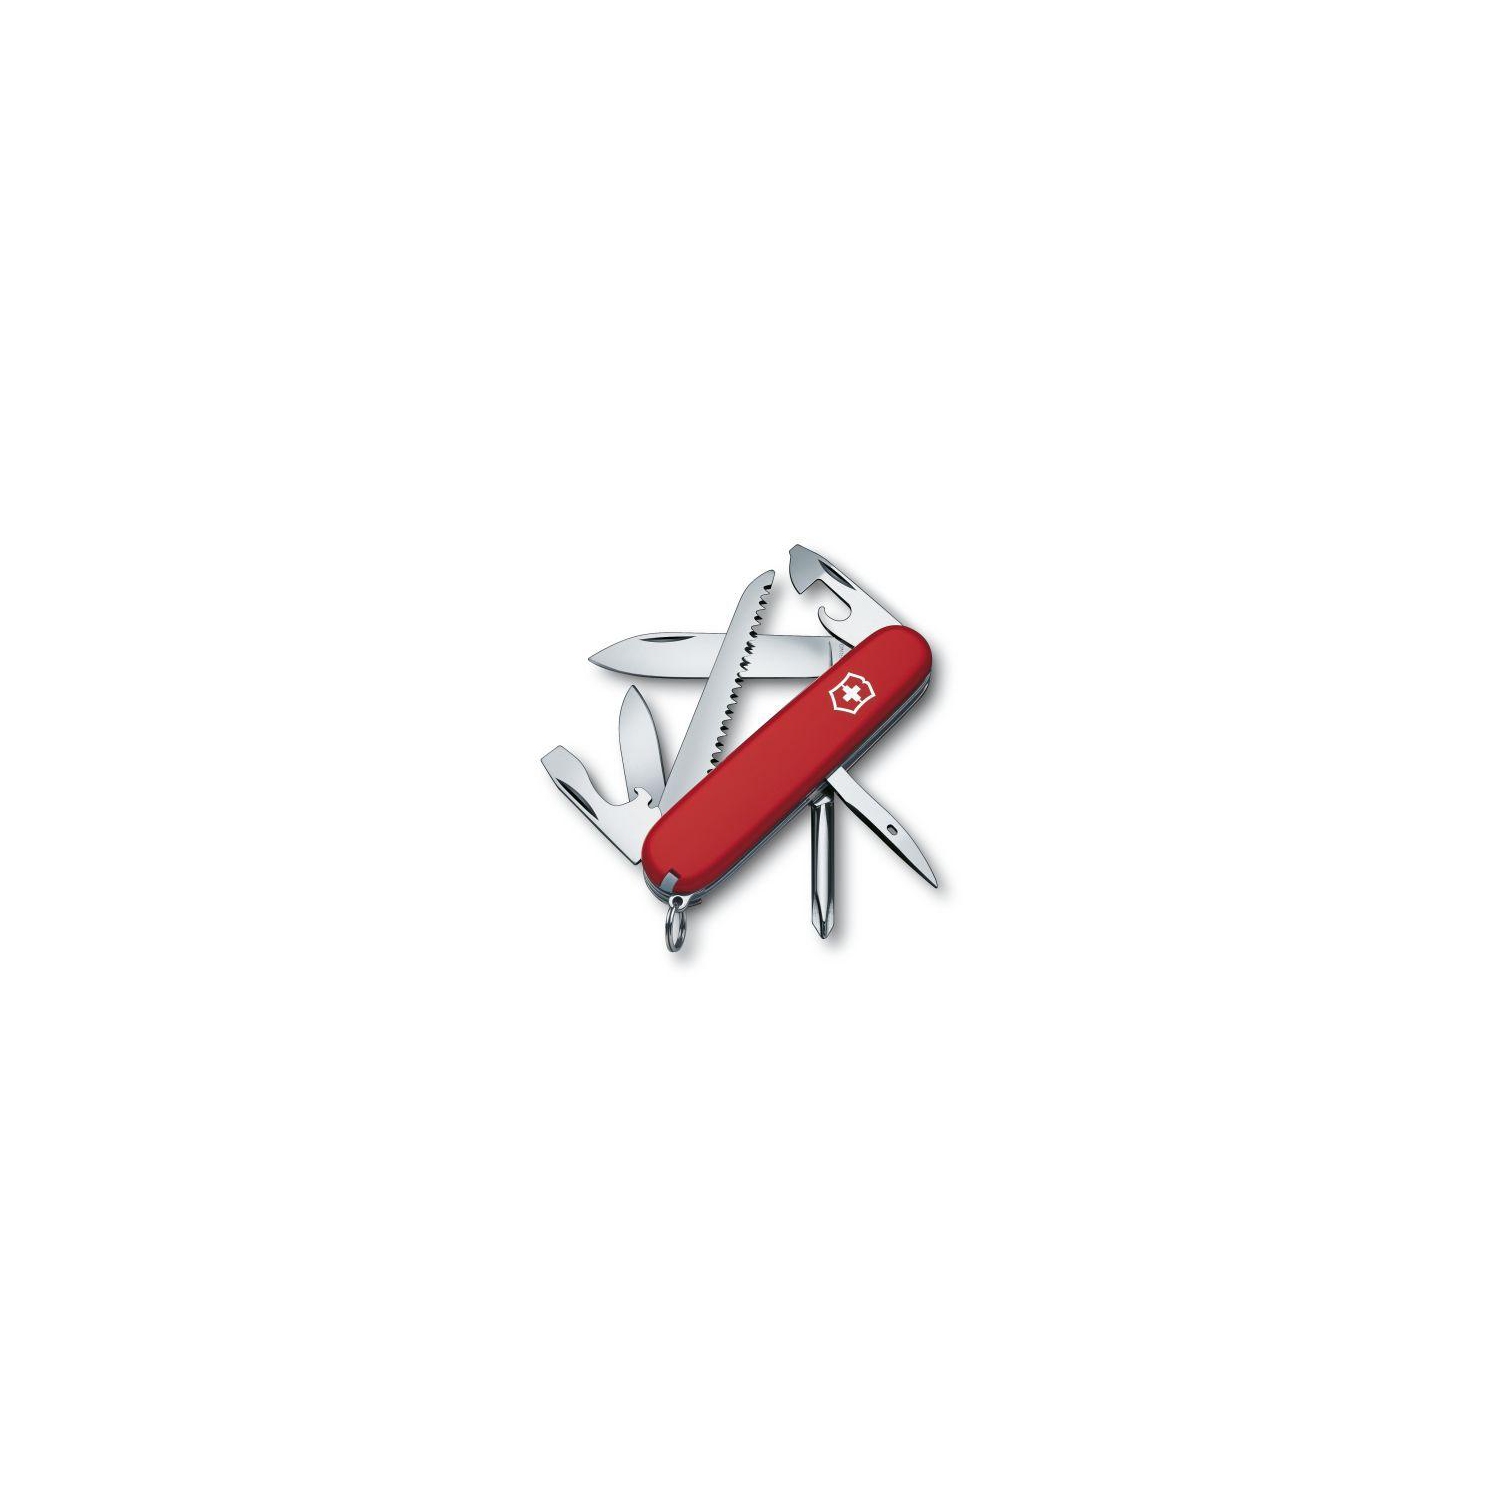 Victorinox Hiker (Red) Swiss Army Knife 1.4613-033-X1